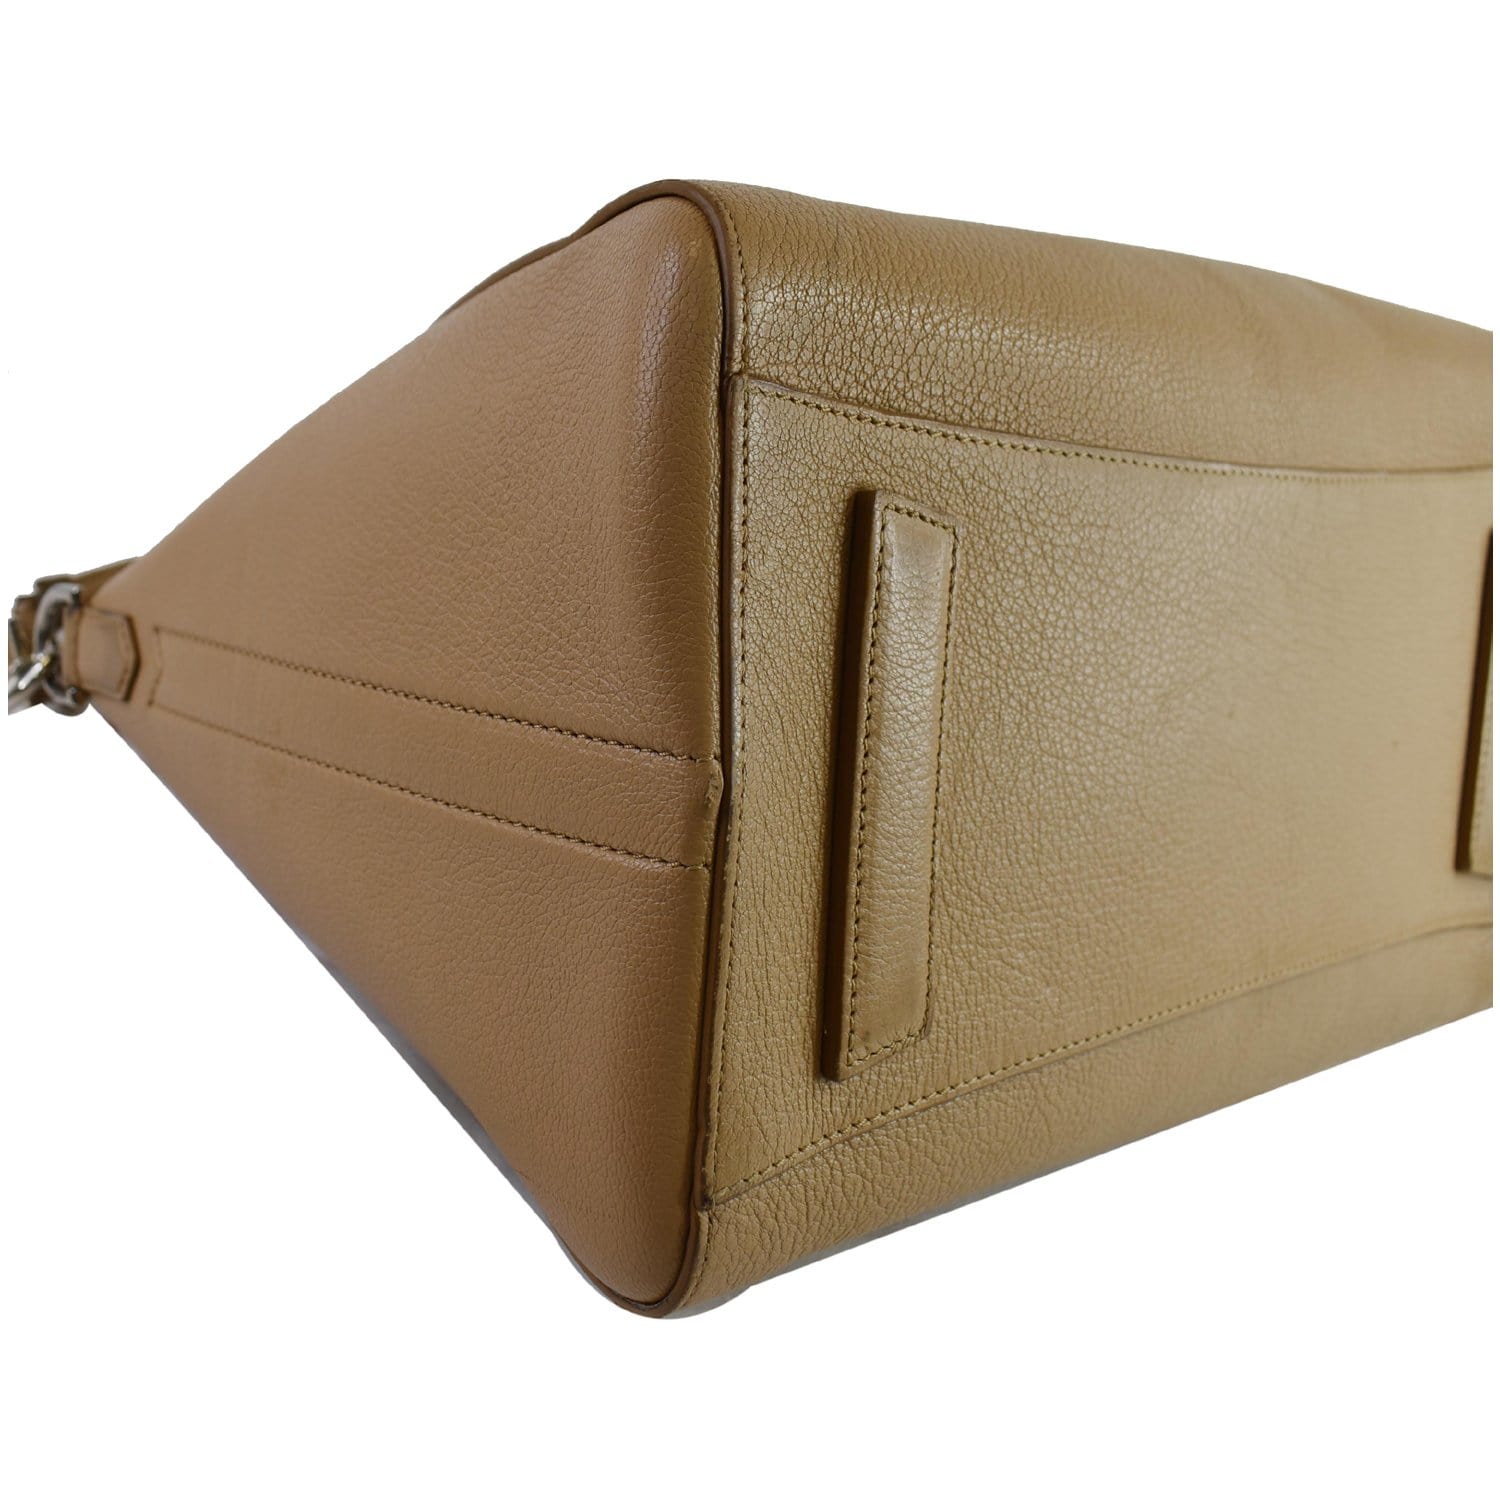 GIVENCHY Antigona Medium Leather Shoulder Bag Beige - 15% OFF